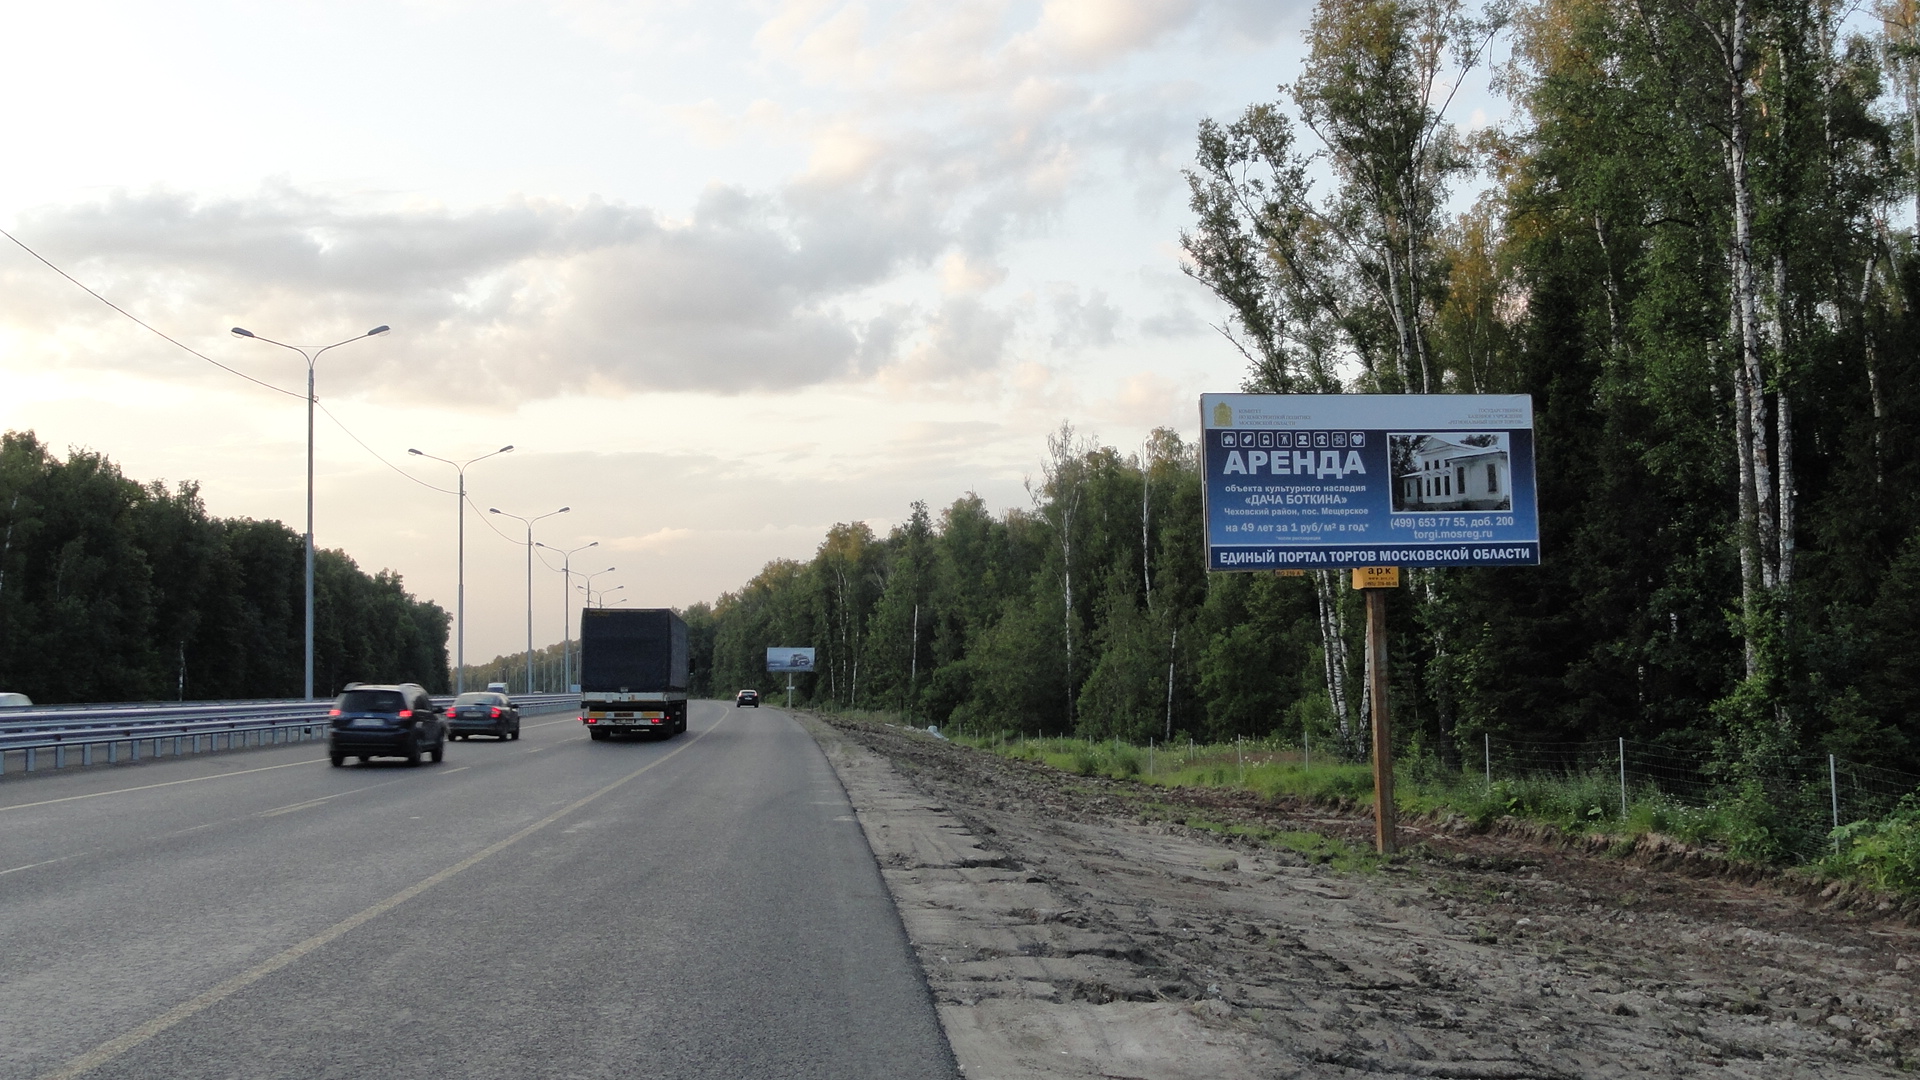 Симферопольское ш.,М-2 Крым 76,22 км, (55,32 км от МКАД), слева, г.Чехов